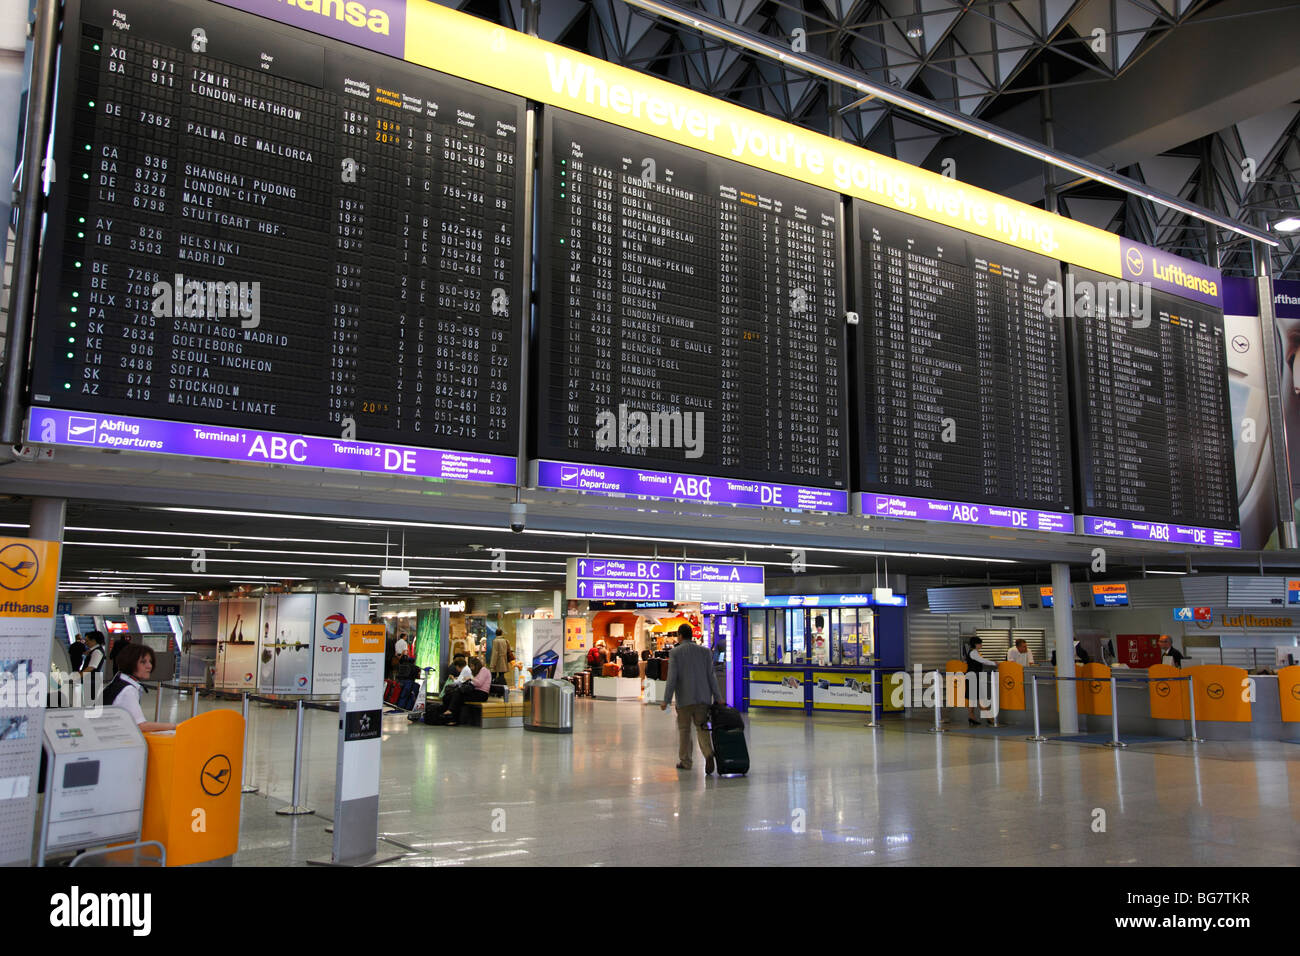 Flughafen frankfurt terminal 1 -Fotos und -Bildmaterial in hoher Auflösung  – Alamy